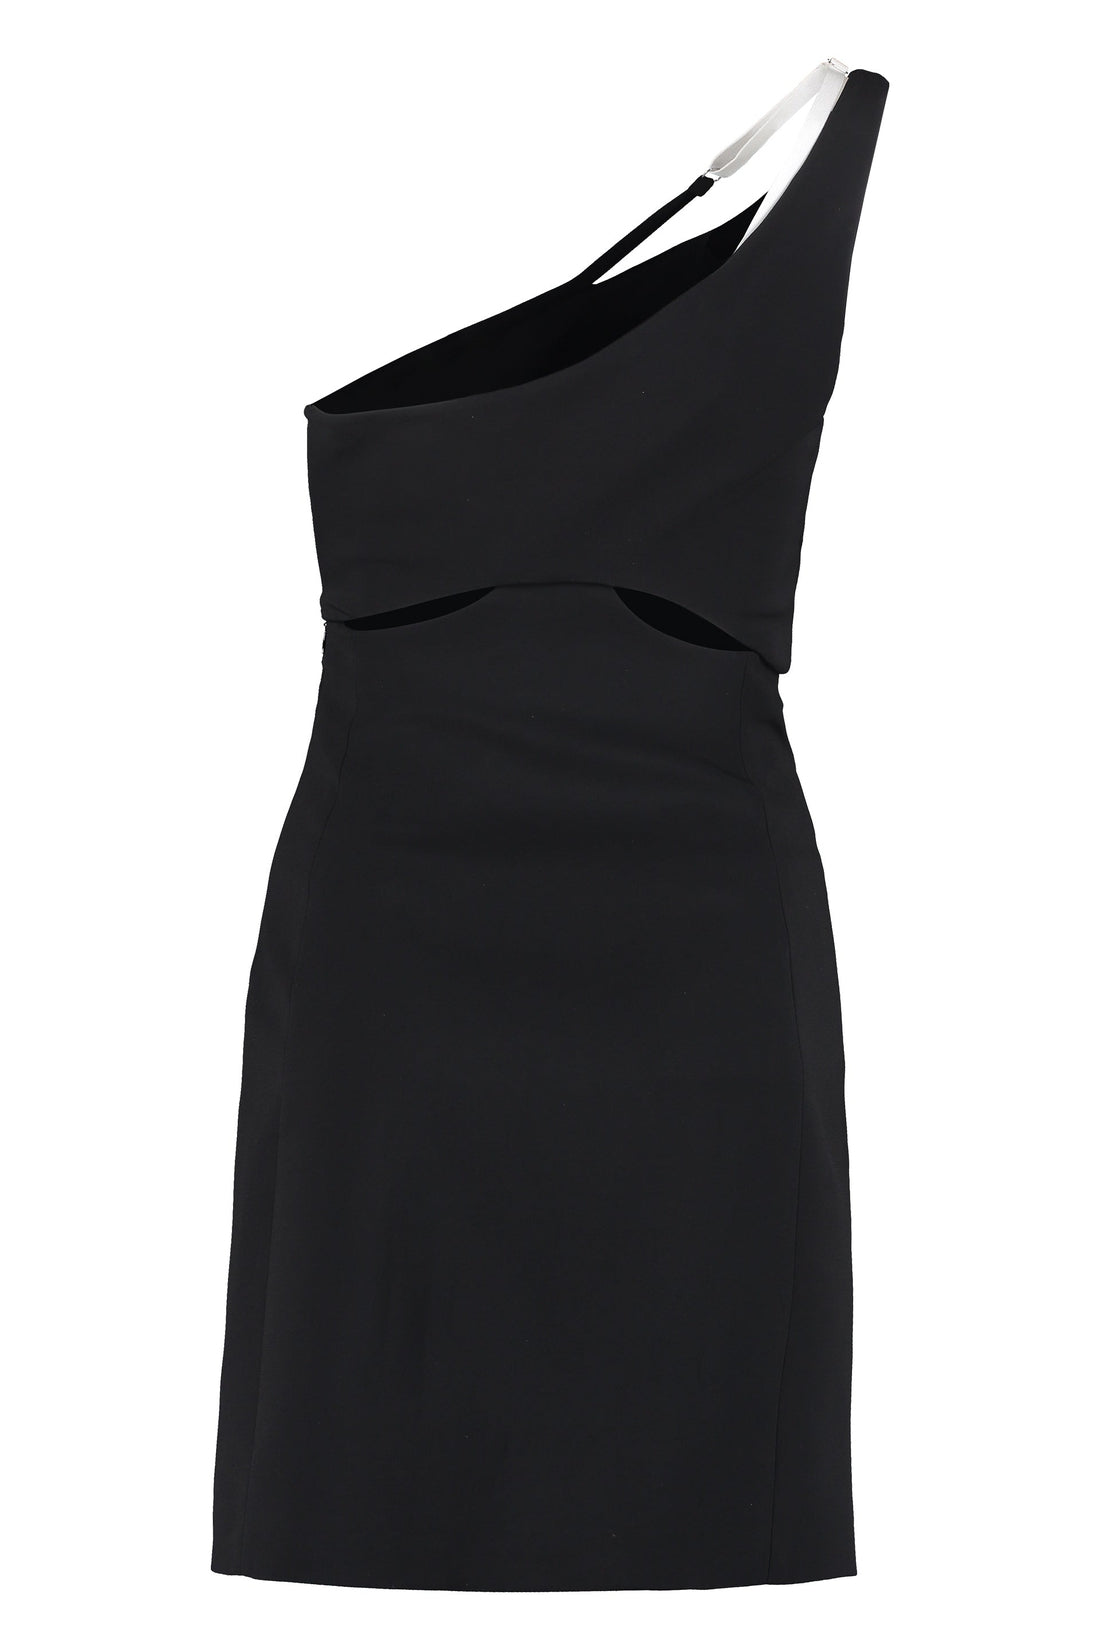 Givenchy-OUTLET-SALE-Asymmetric mini dress-ARCHIVIST